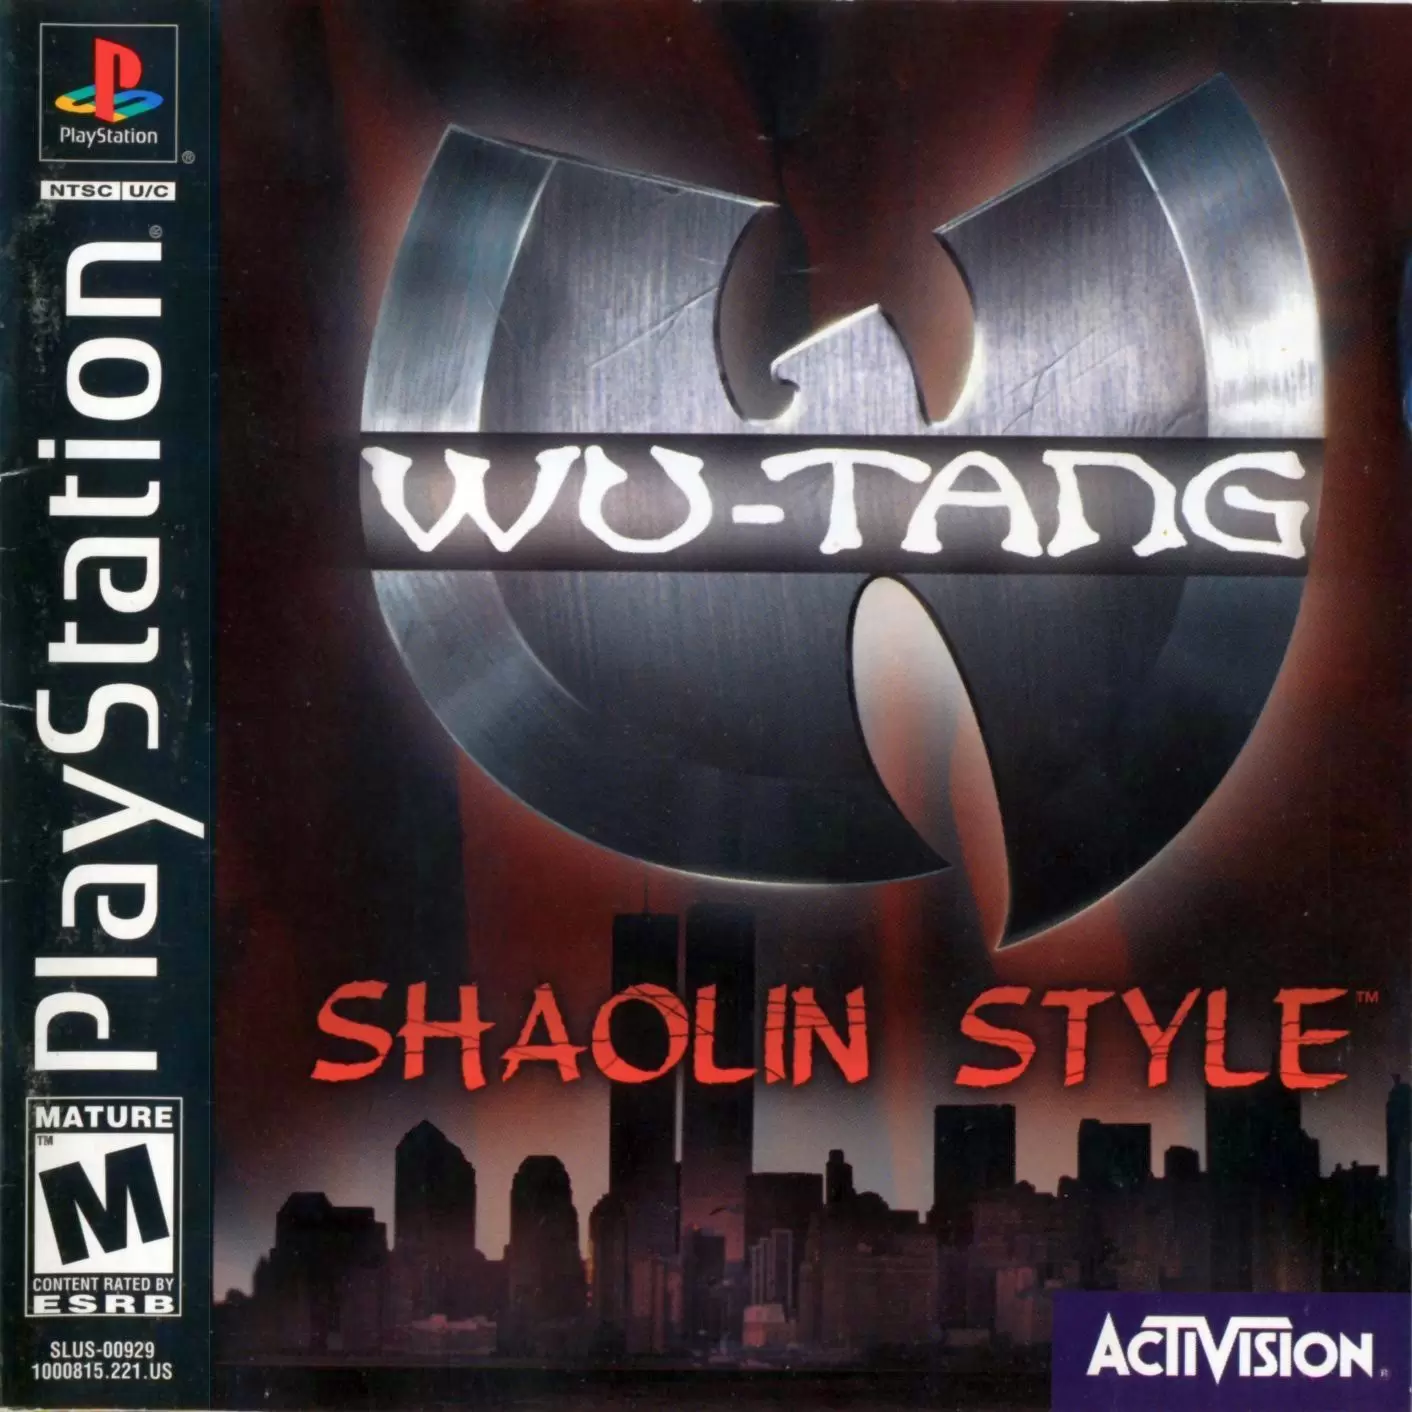 Playstation games - Wu-Tang Shaolin Style